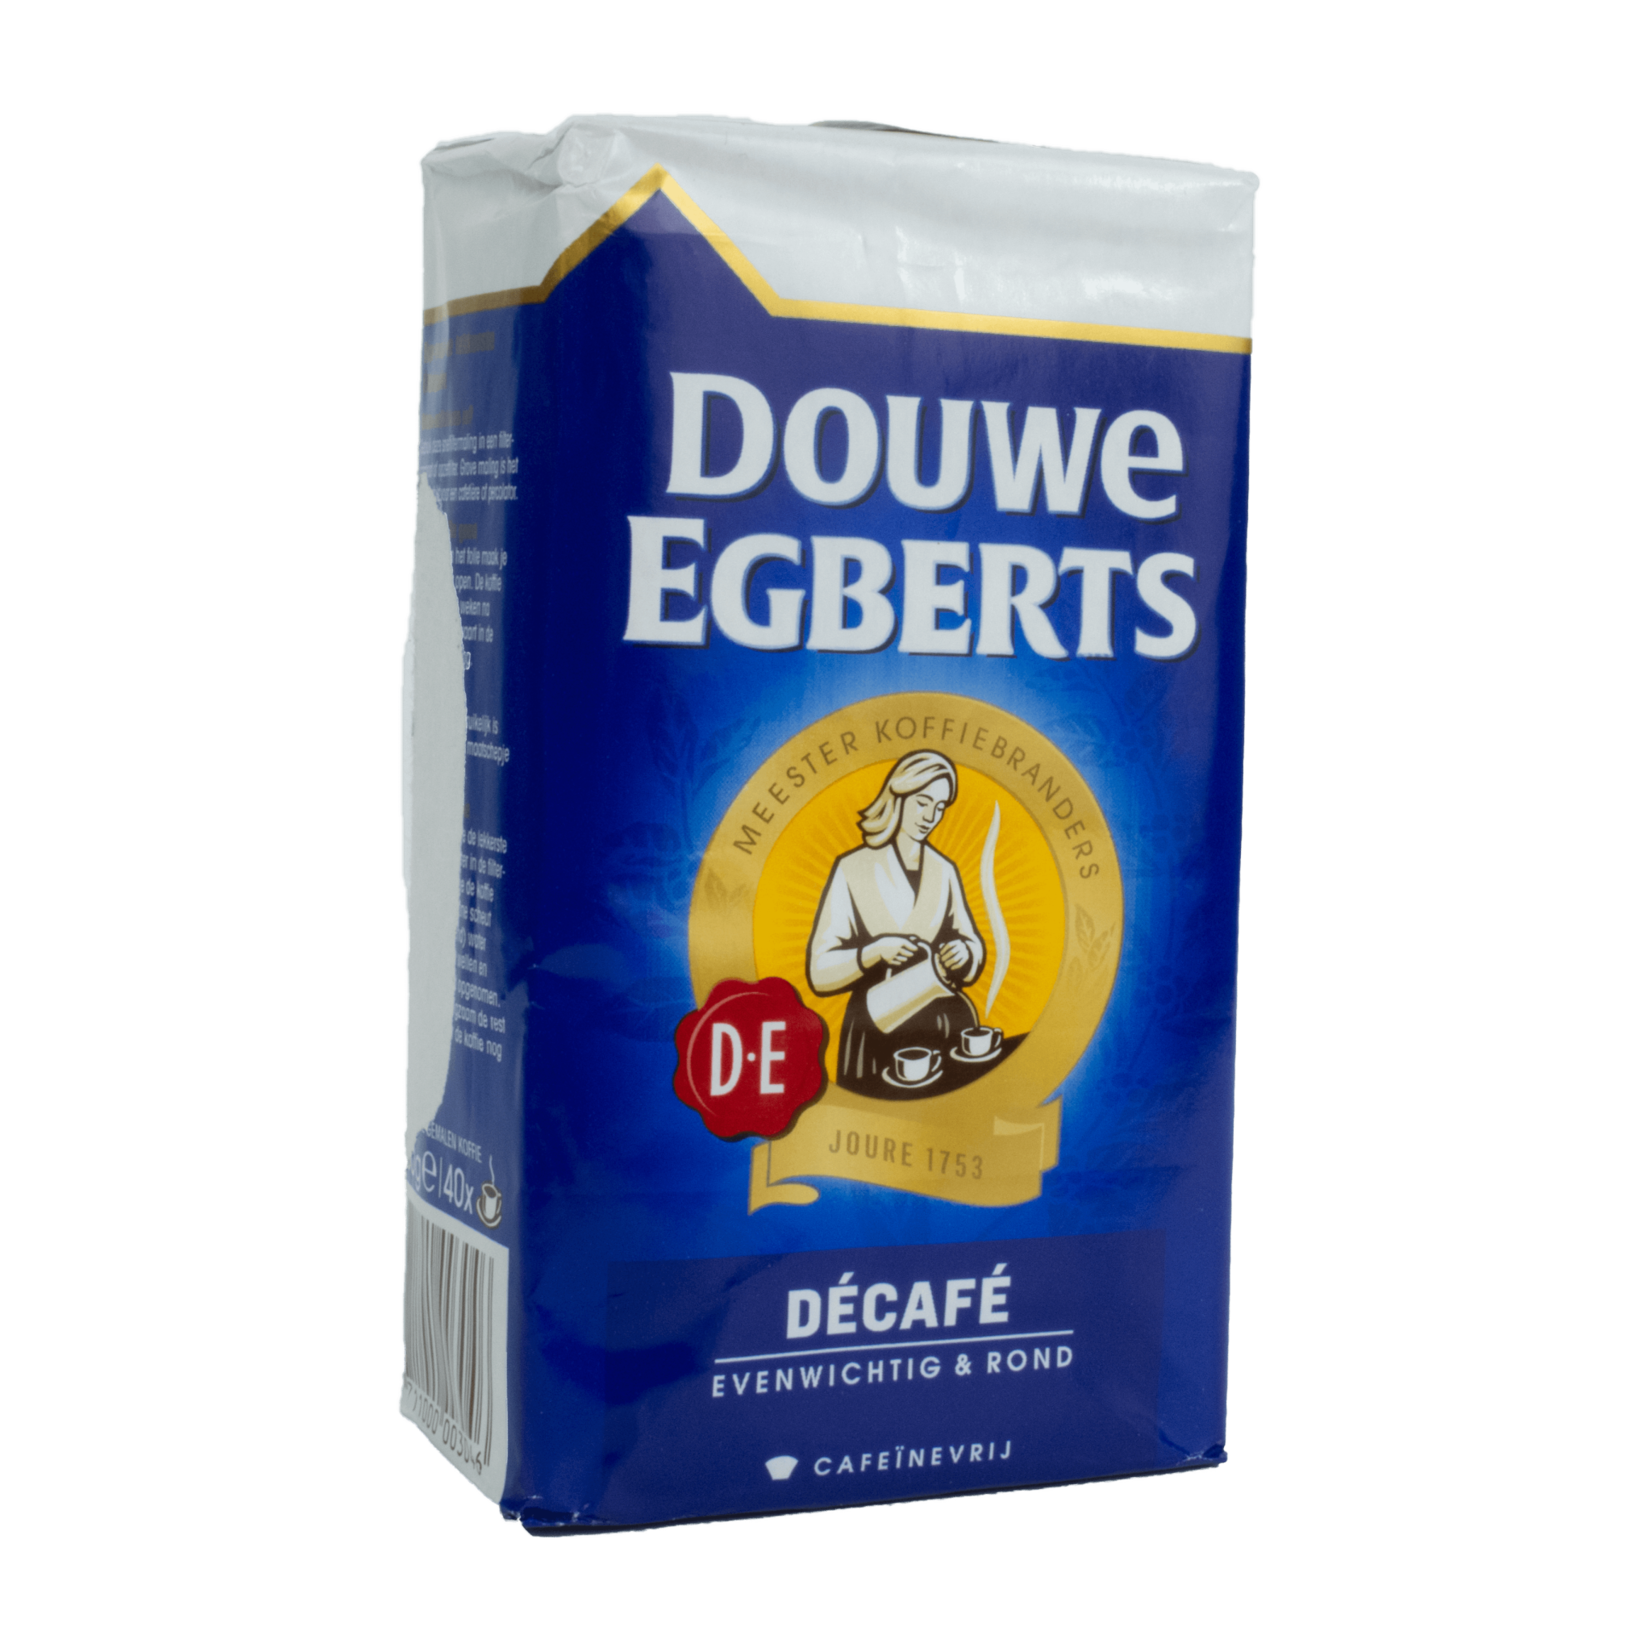 Douwe Egberts Douwe Egberts Coffee - Decaf 250g